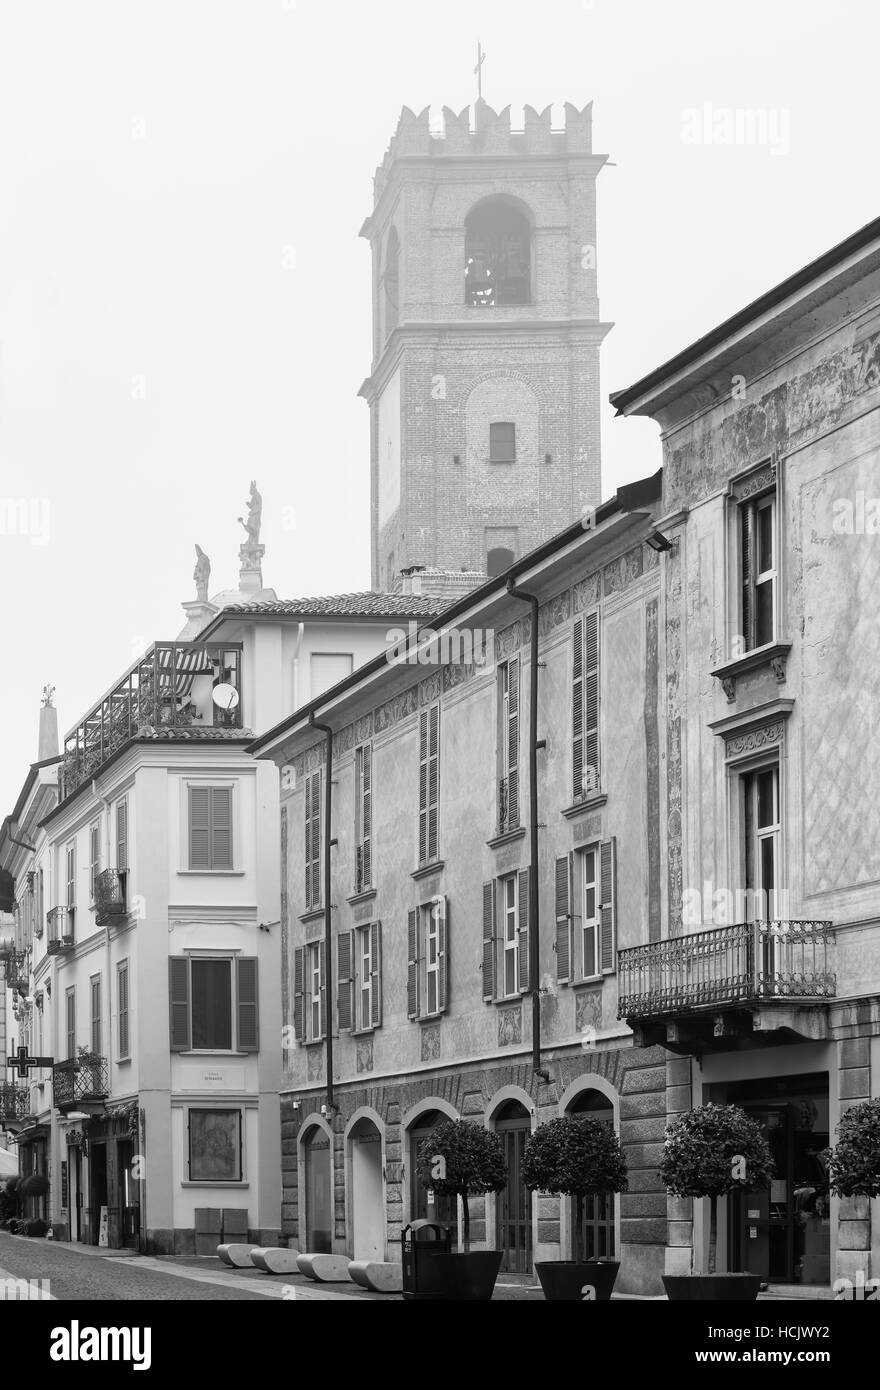 Una bella vista del centro storico di Vigevano, Italia. Foto in bianco e nero. Foto Stock